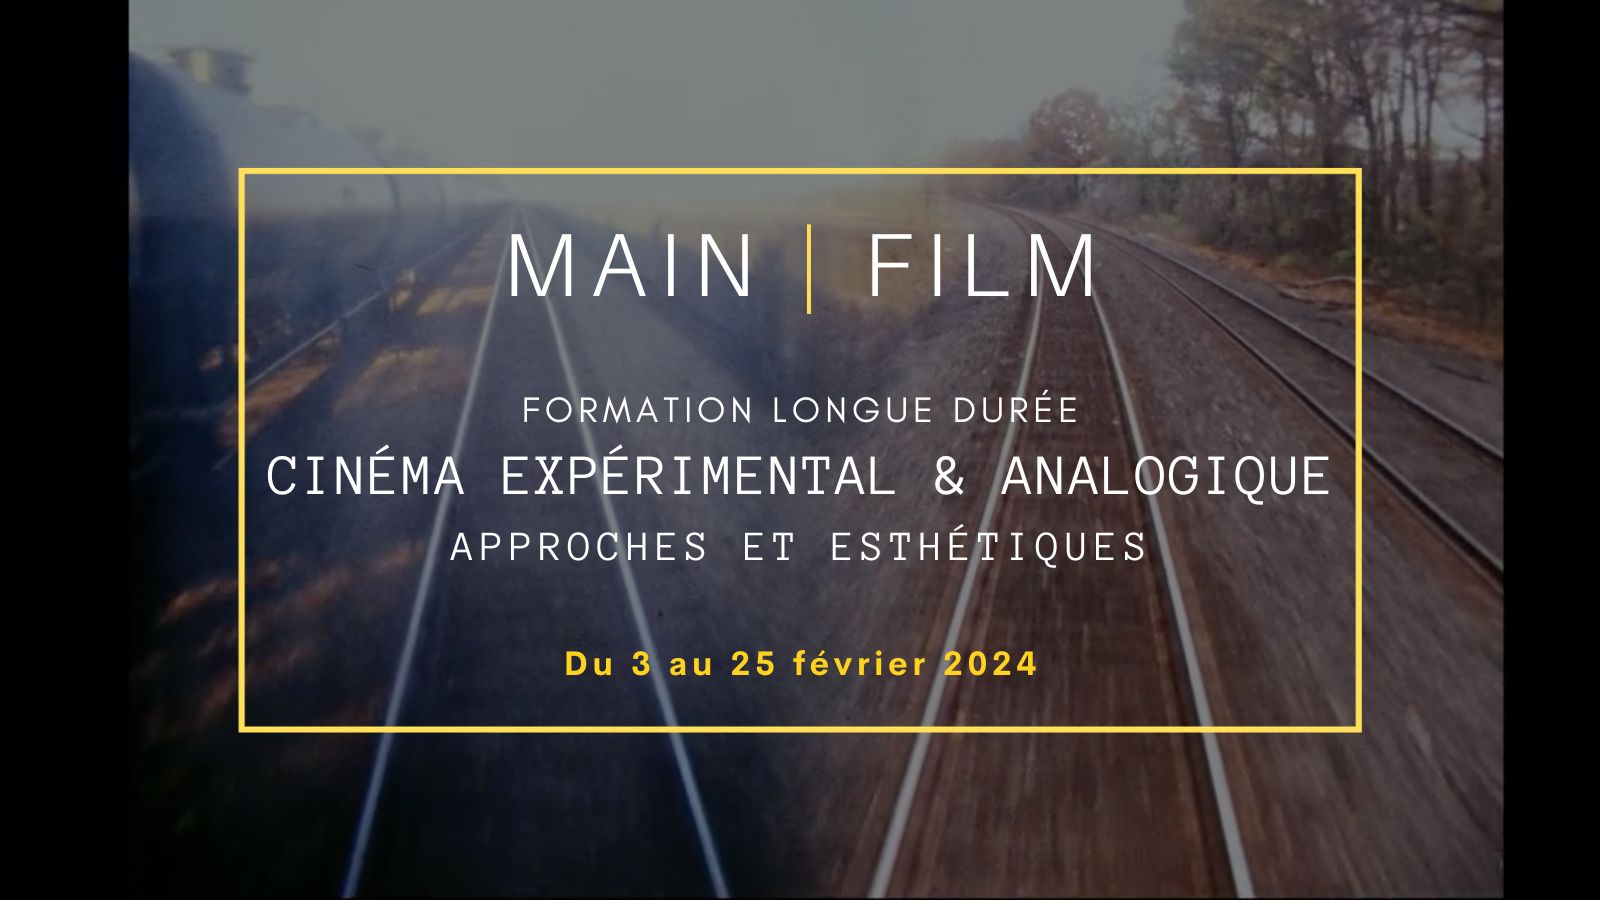 Cinéma expérimental & analogique